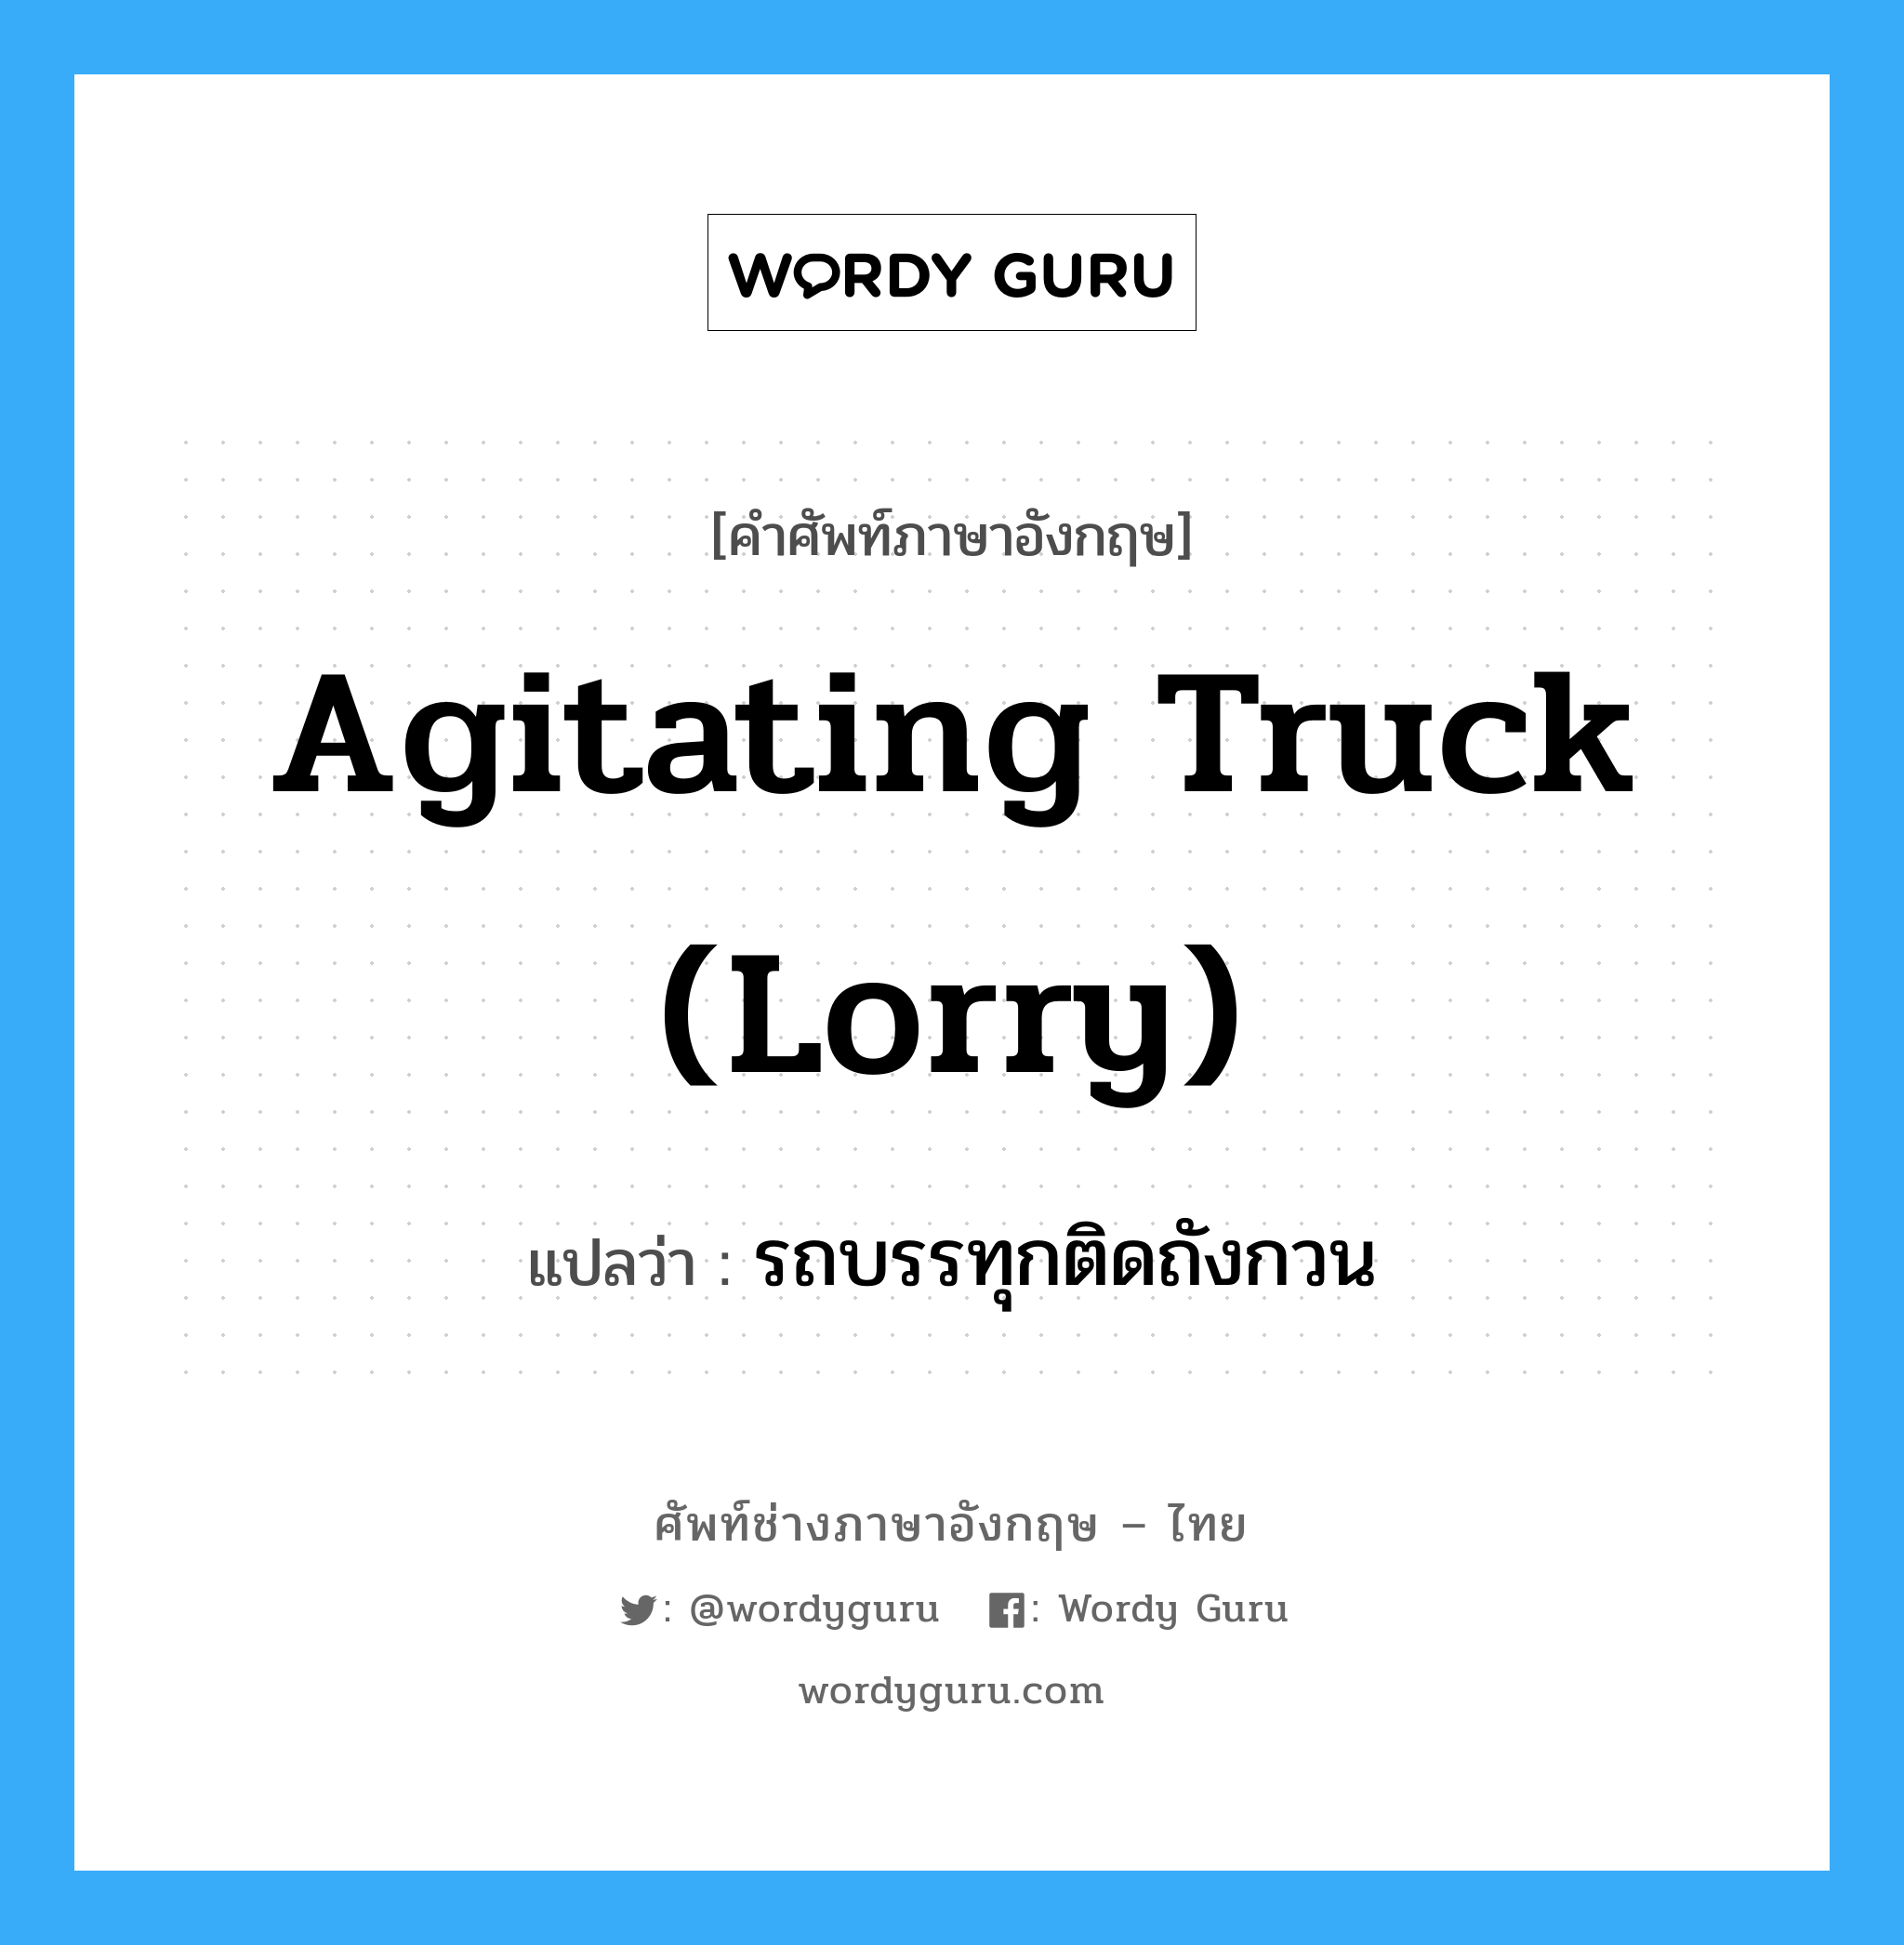 รถบรรทุกติดถังกวน ภาษาอังกฤษ?, คำศัพท์ช่างภาษาอังกฤษ - ไทย รถบรรทุกติดถังกวน คำศัพท์ภาษาอังกฤษ รถบรรทุกติดถังกวน แปลว่า agitating truck (lorry)